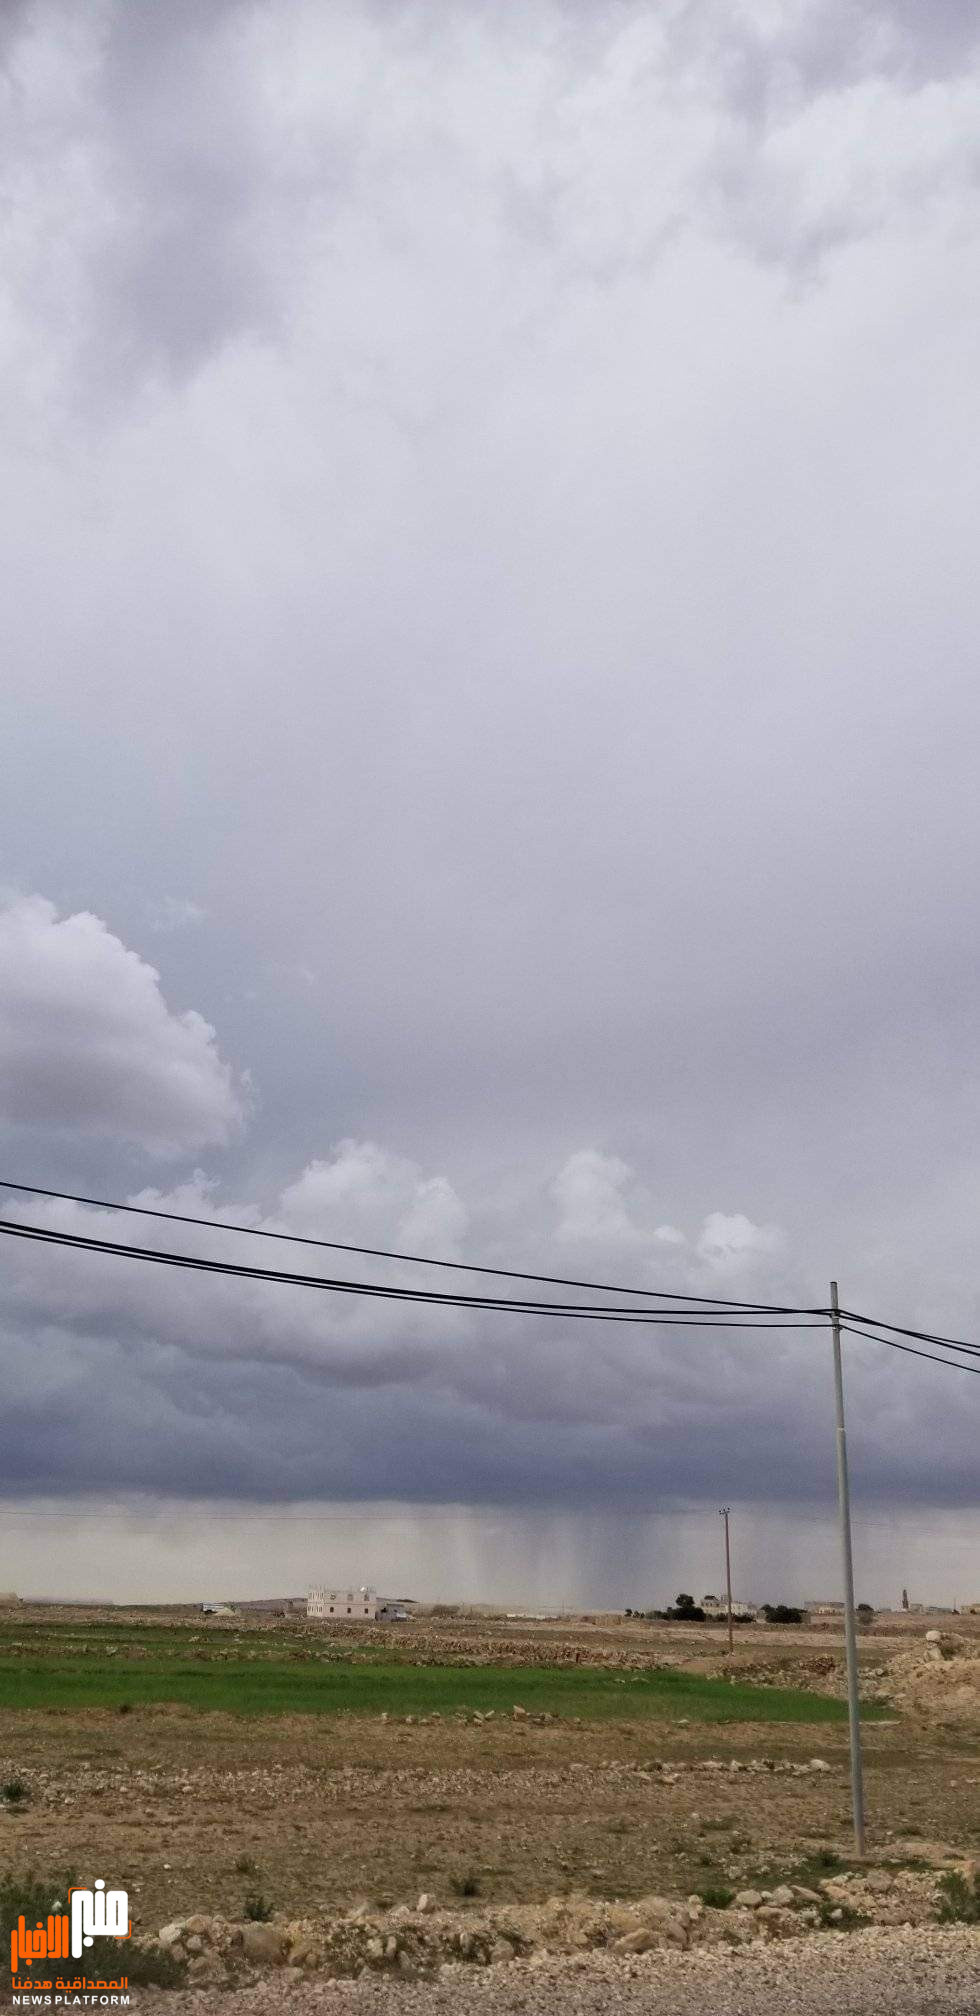 هكذا تبدو الأجواء بسماء خمر في عمران (صورة)